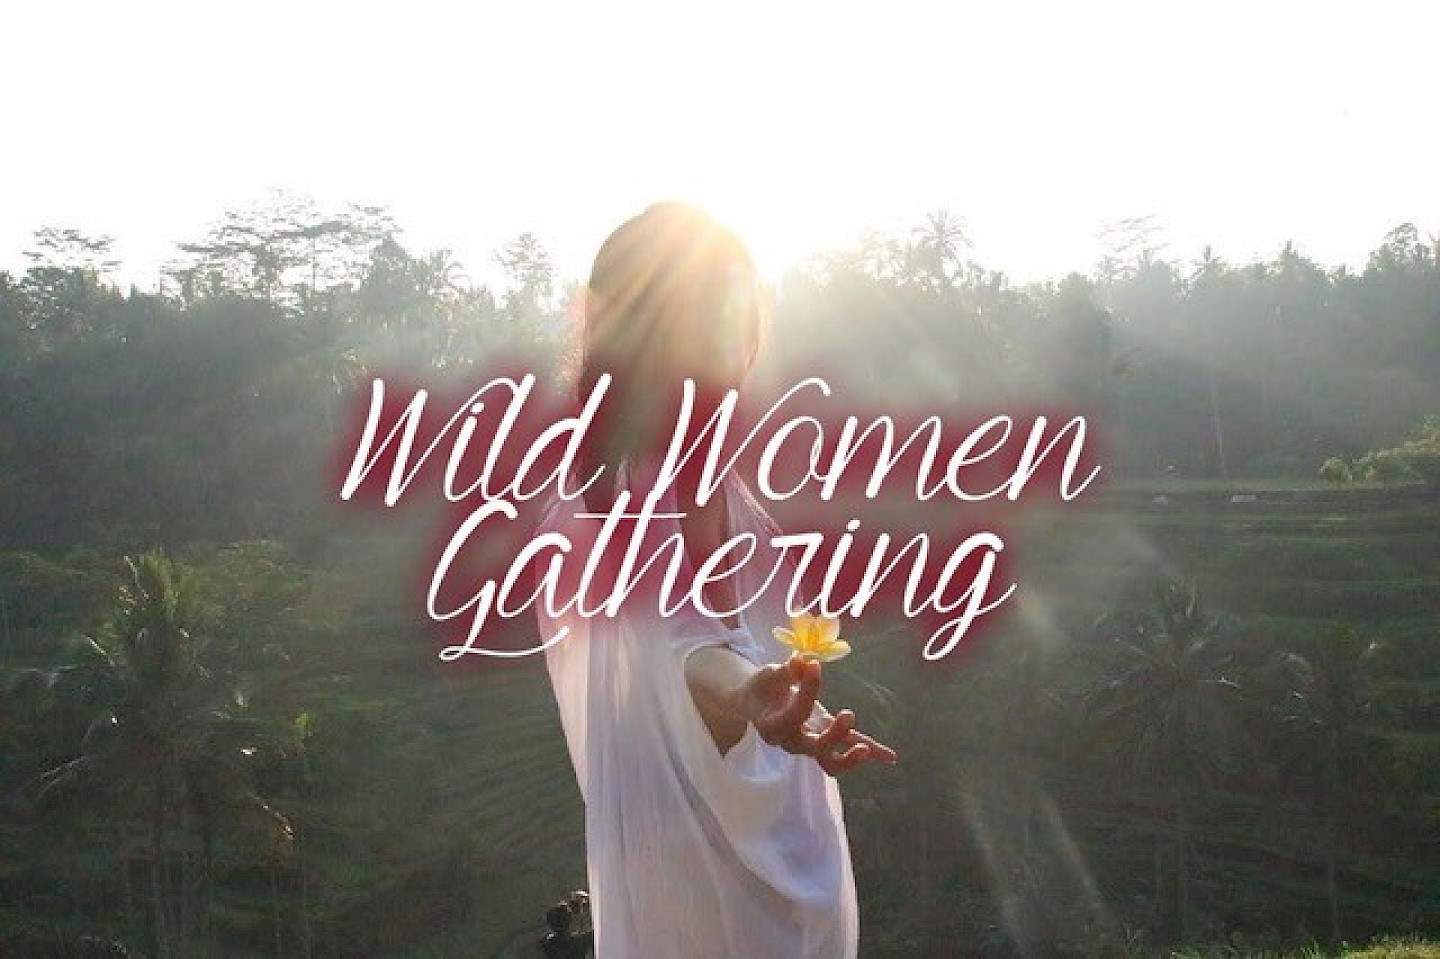 WILD WOMEN GATHERING